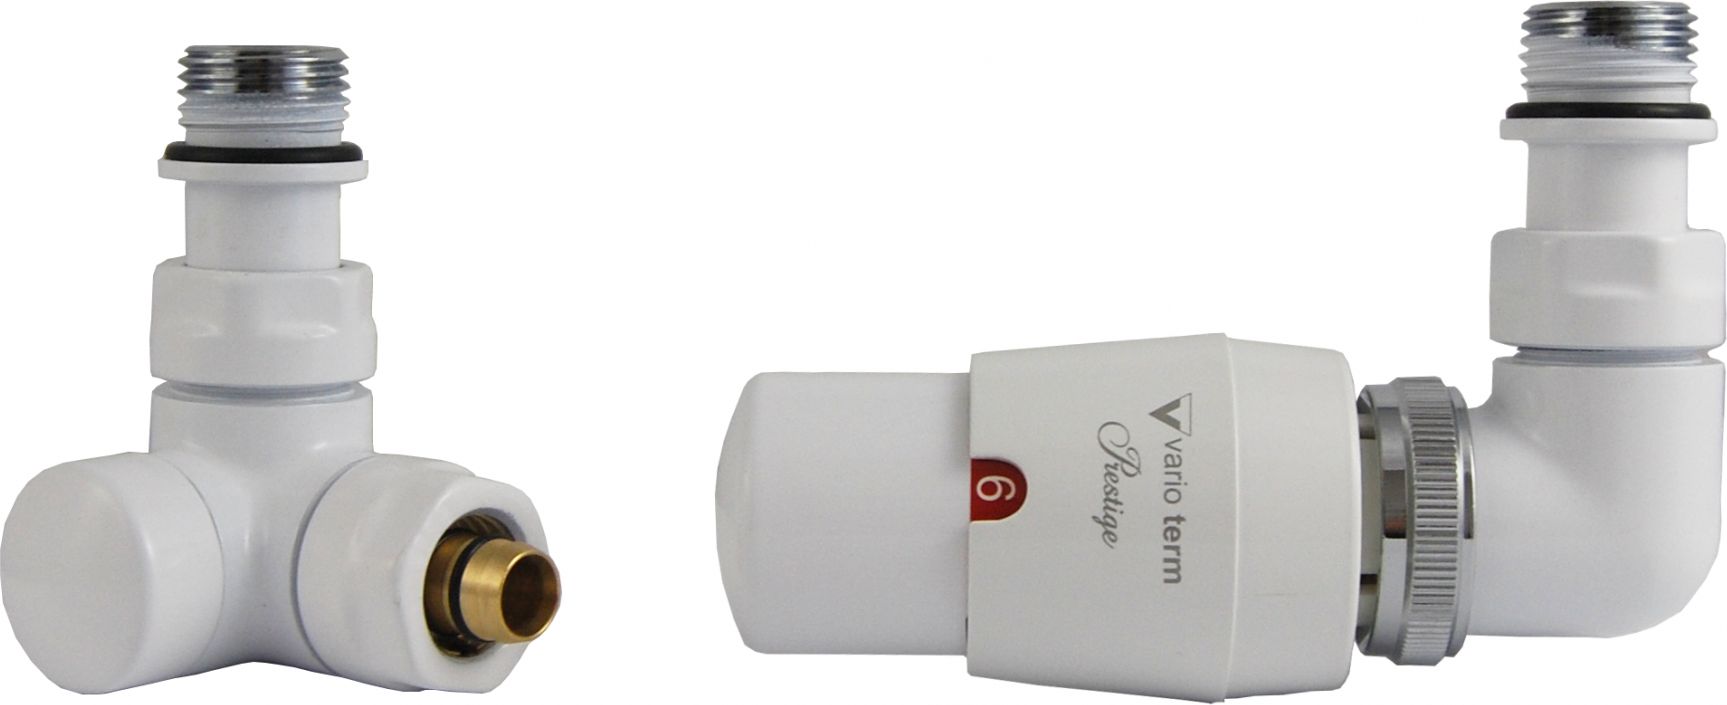 Varioterm Zestaw grzejnikowy Vision termostatyczny prawy bialy (VIGS0206CFK/P) VIGS0206CFK/P (5902249829136)